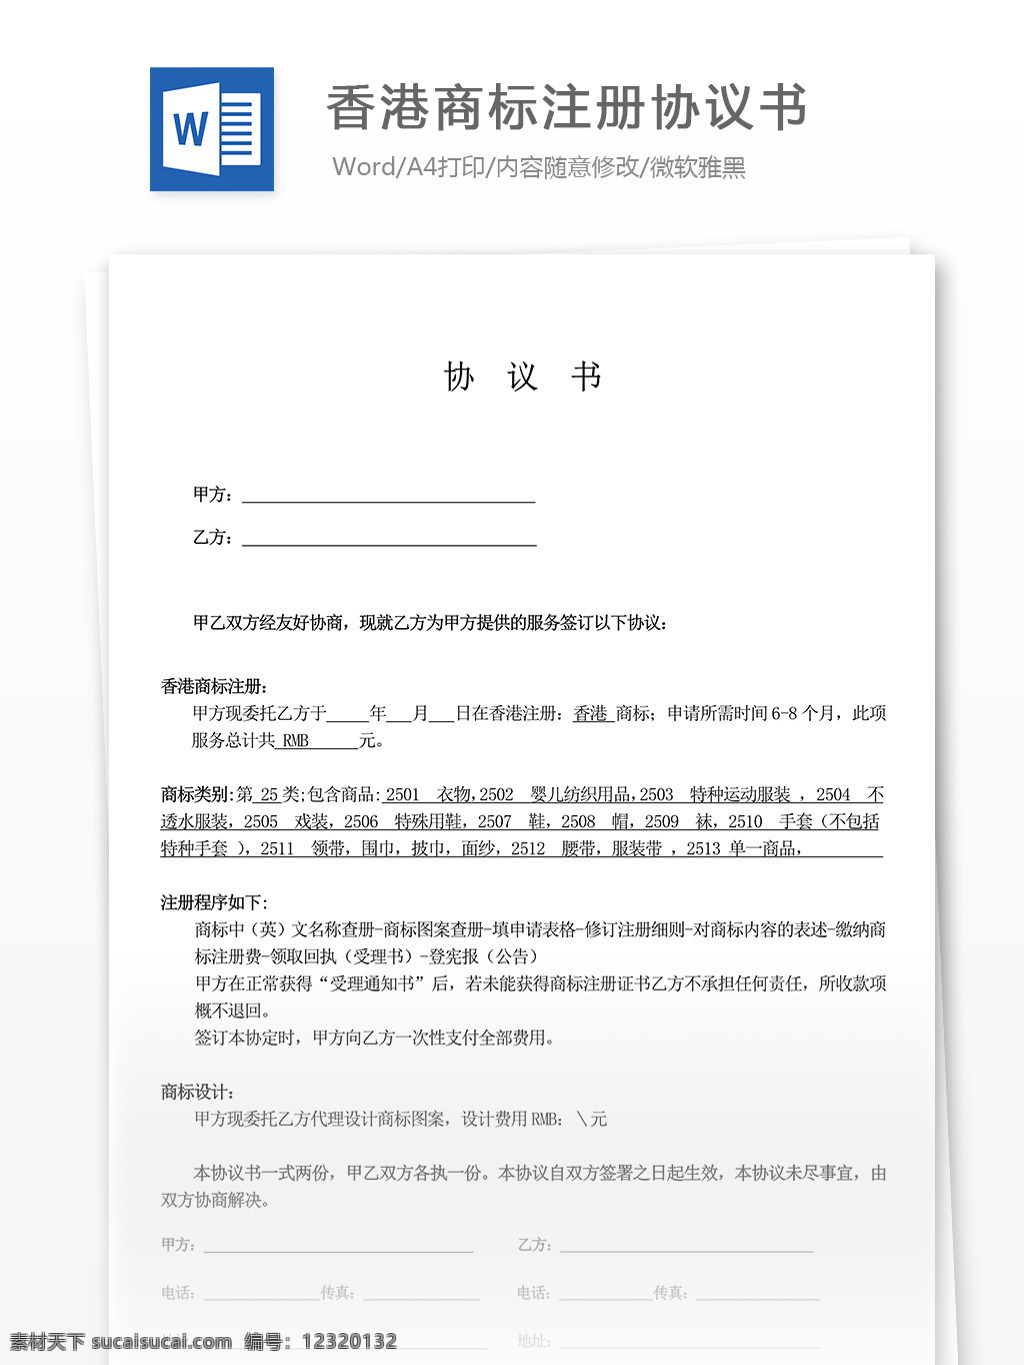 香港 商标注册 协议书 合同 协议 文档 合同协议 合同书 合同协议文档 文档模板 word文档